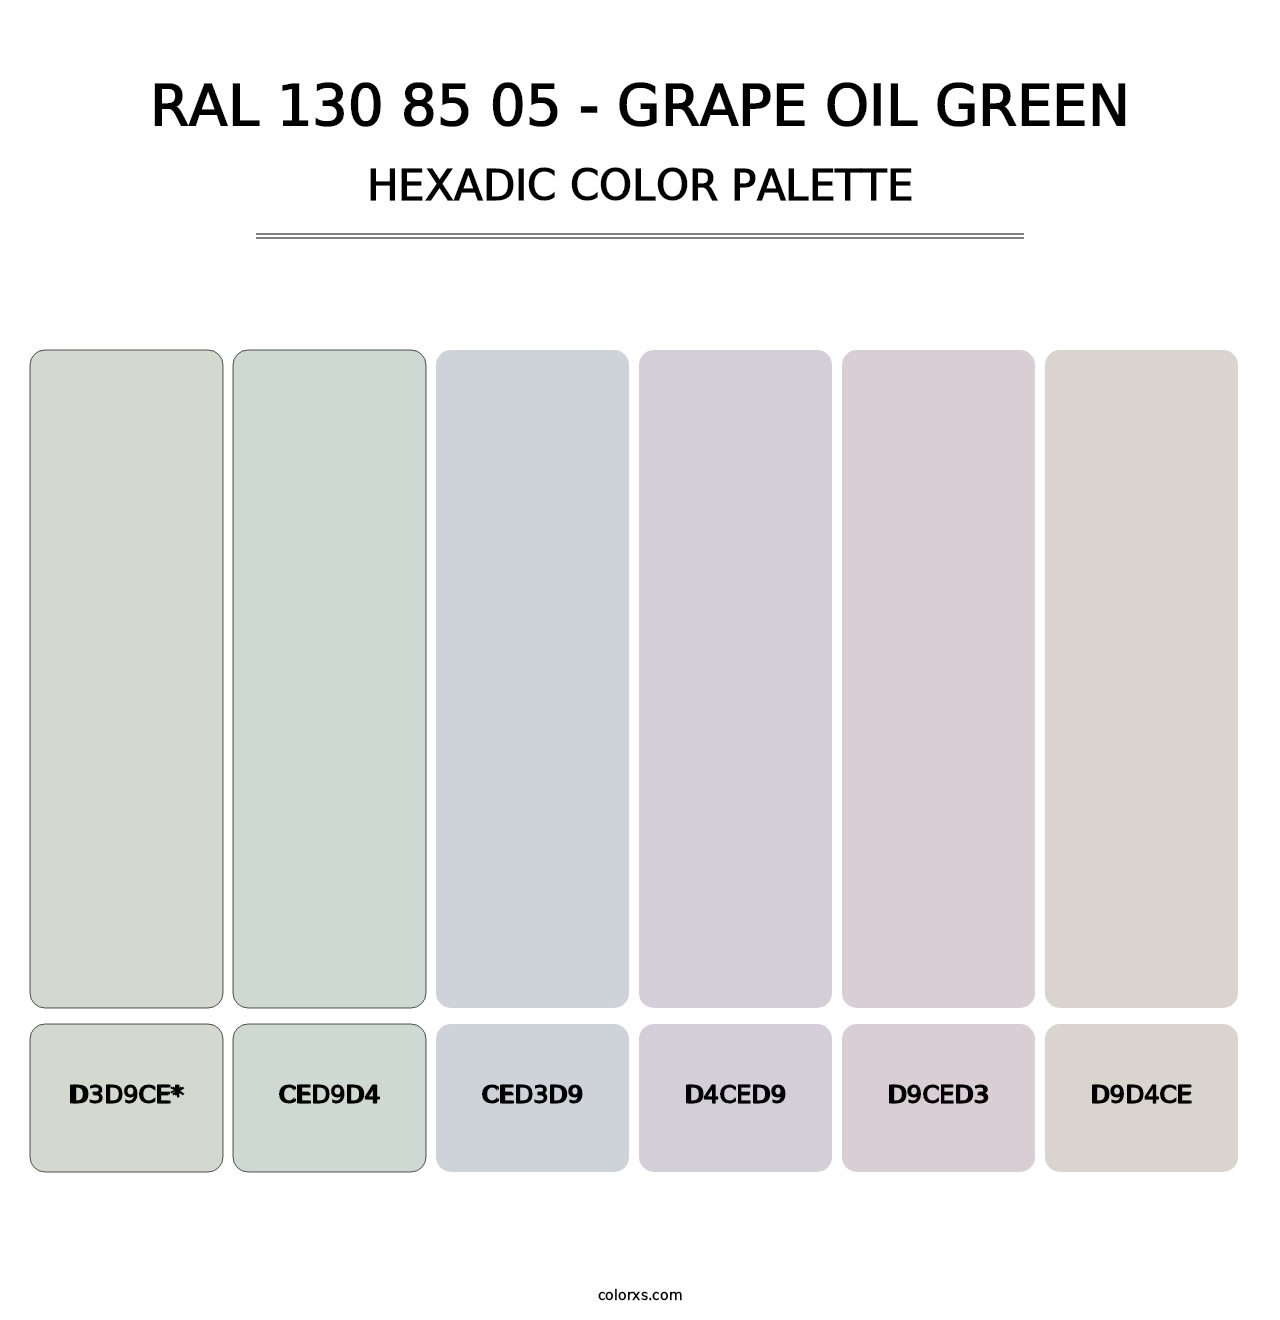 RAL 130 85 05 - Grape Oil Green - Hexadic Color Palette